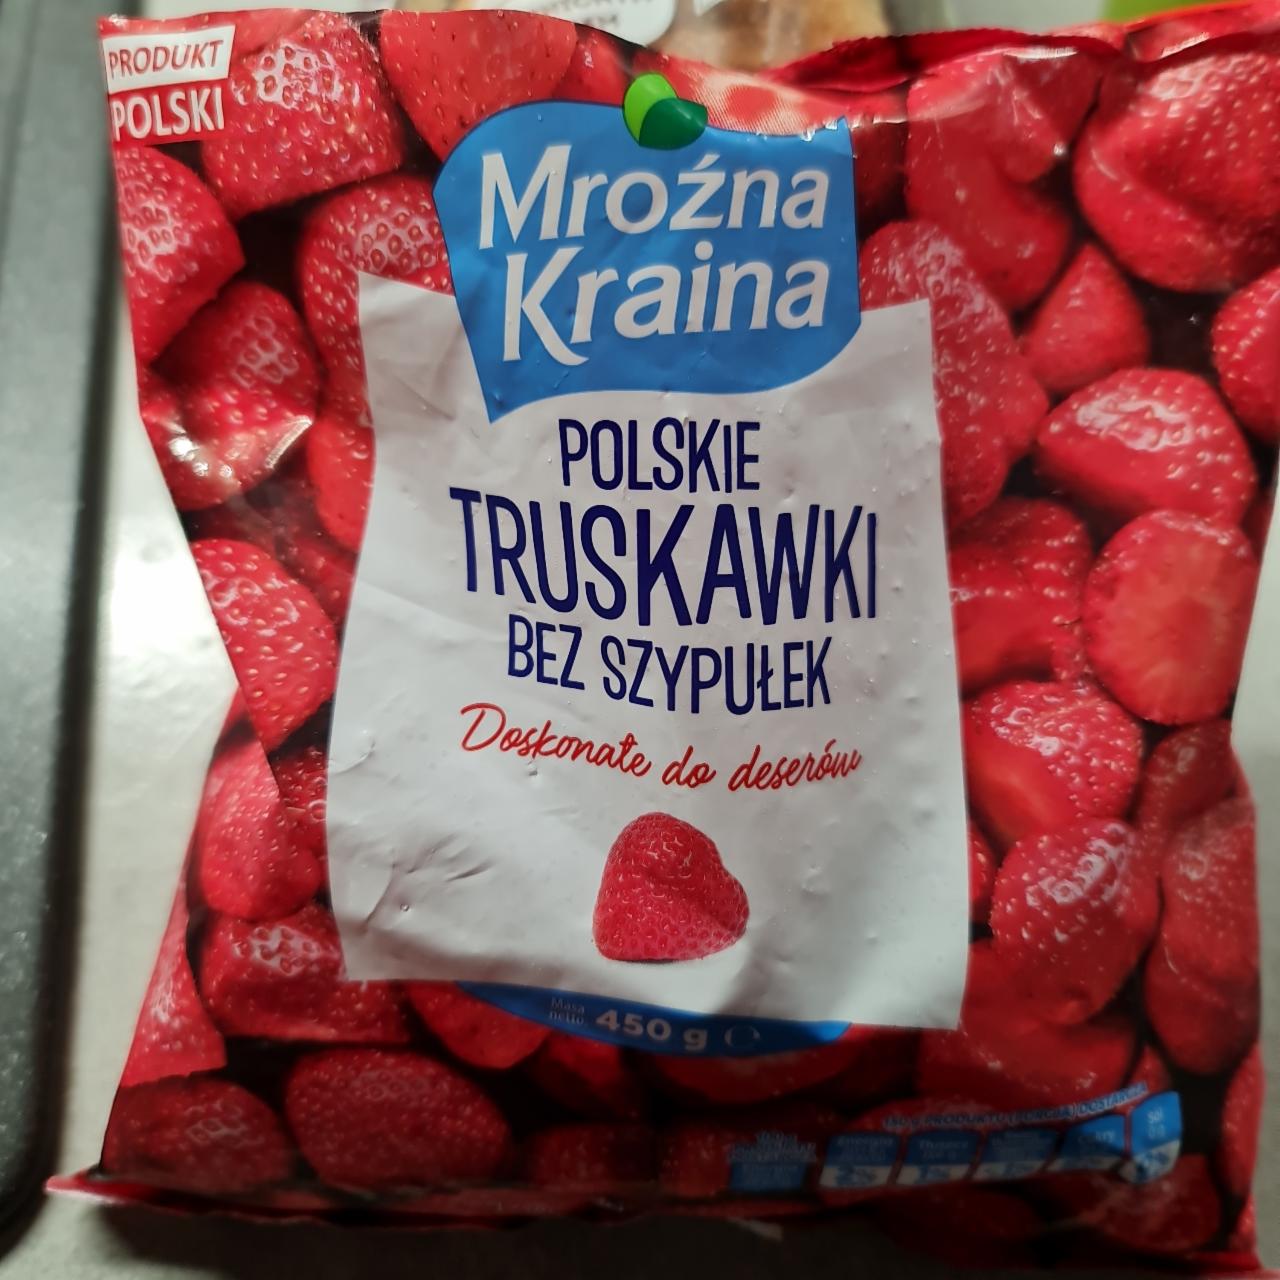 Zdjęcia - Polskie truskawki bez szypułek Mrożna kraina